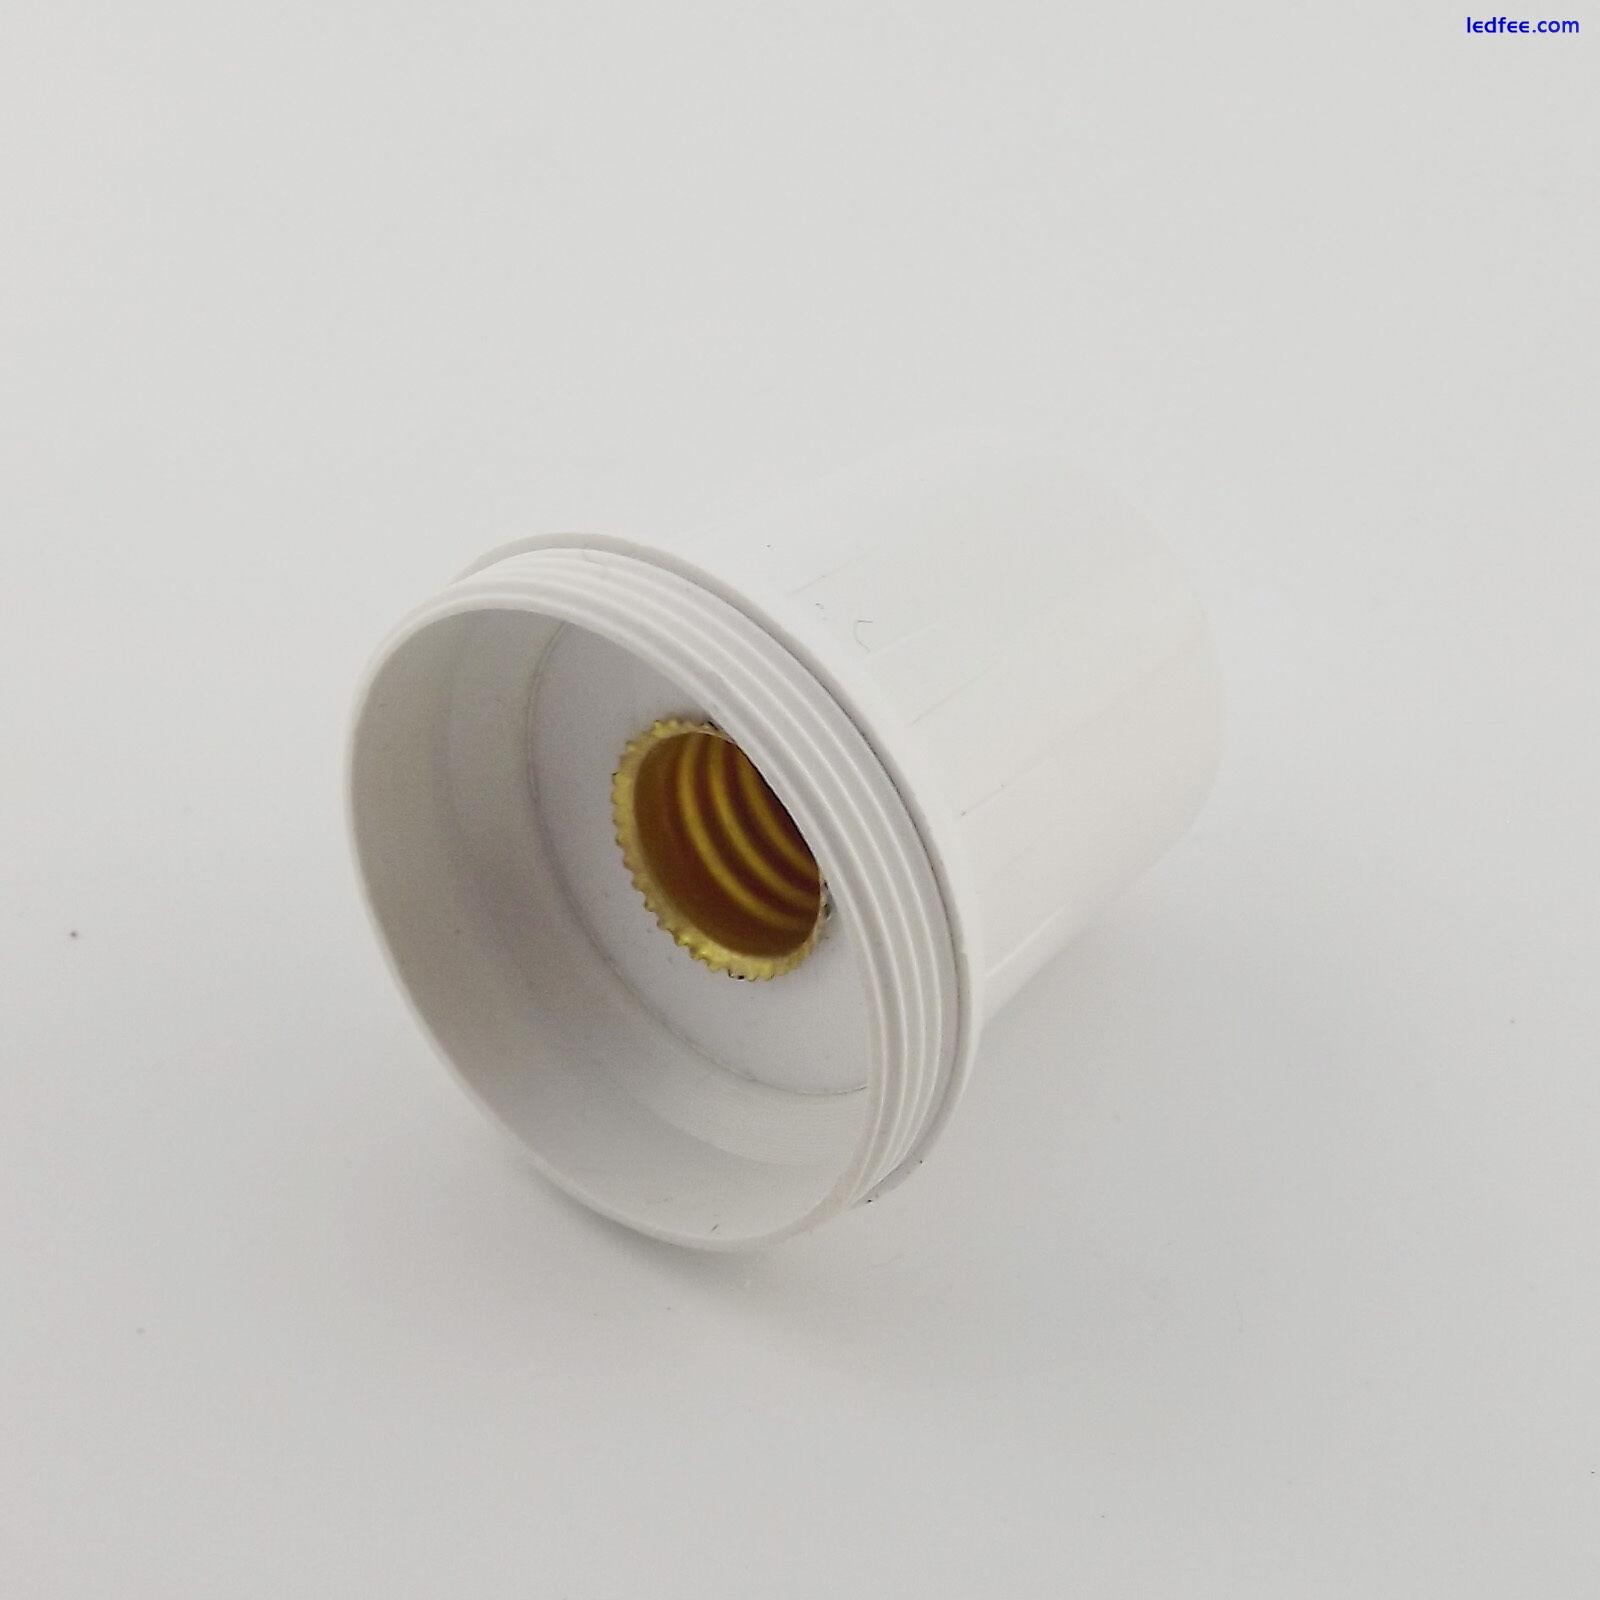 MR16 to E10 Screw Thread LED Halogen CFL Light Bulb Lamp Socket Convert Holder 3 